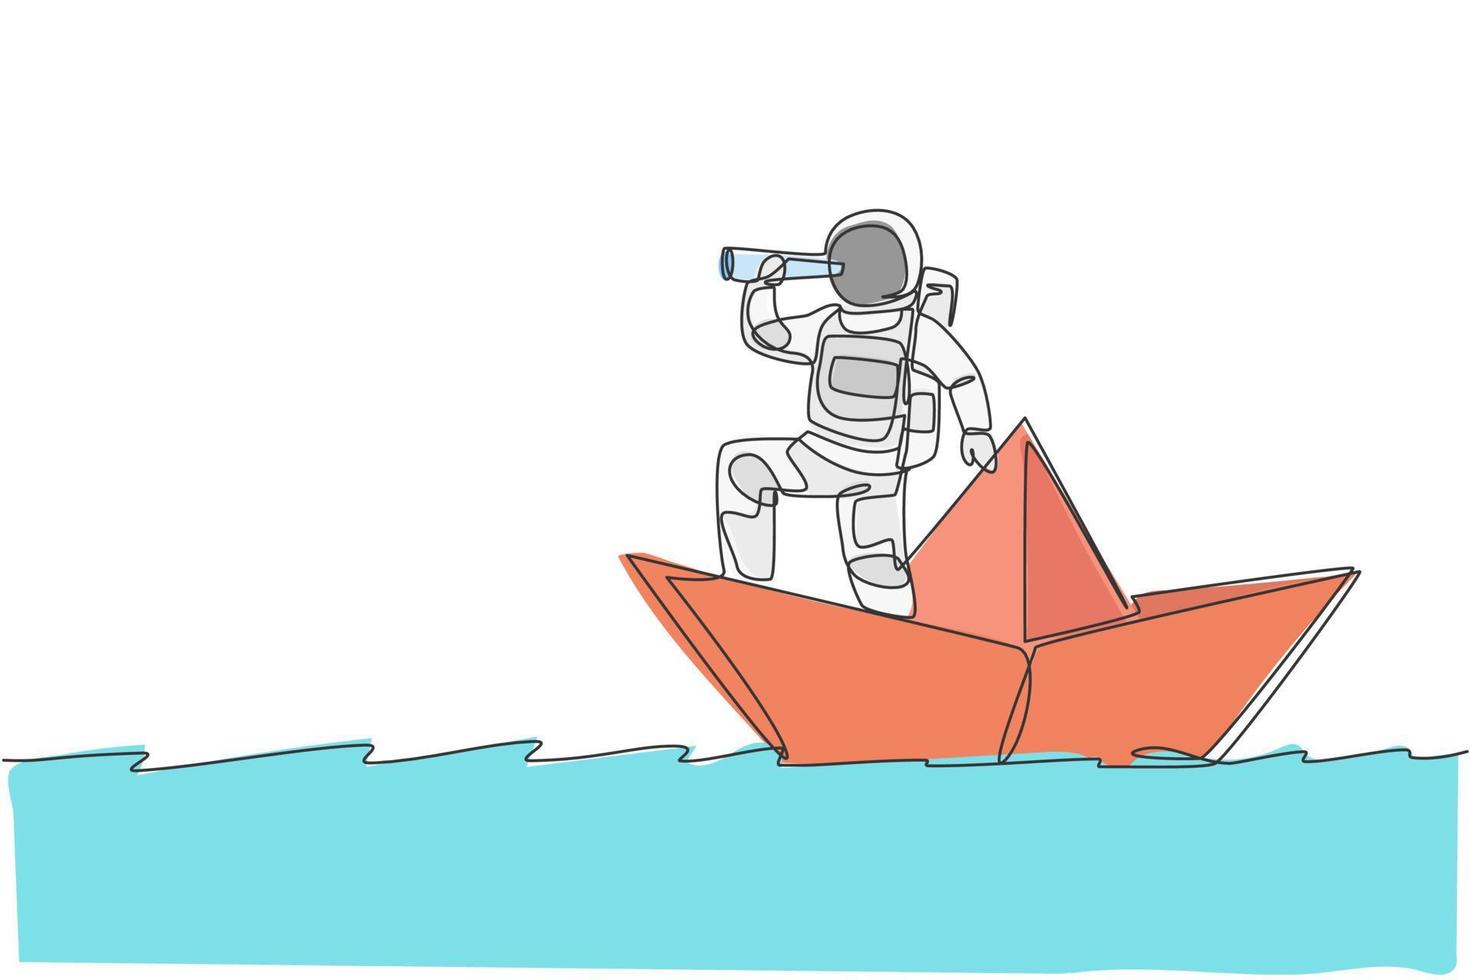 um único desenho de linha jovem astronauta olhar para a frente usando o telescópio enquanto estava em um barco de papel na ilustração gráfica do vetor do oceano do mar. conceito de espaço profundo do cosmonauta. design de desenho de linha contínua